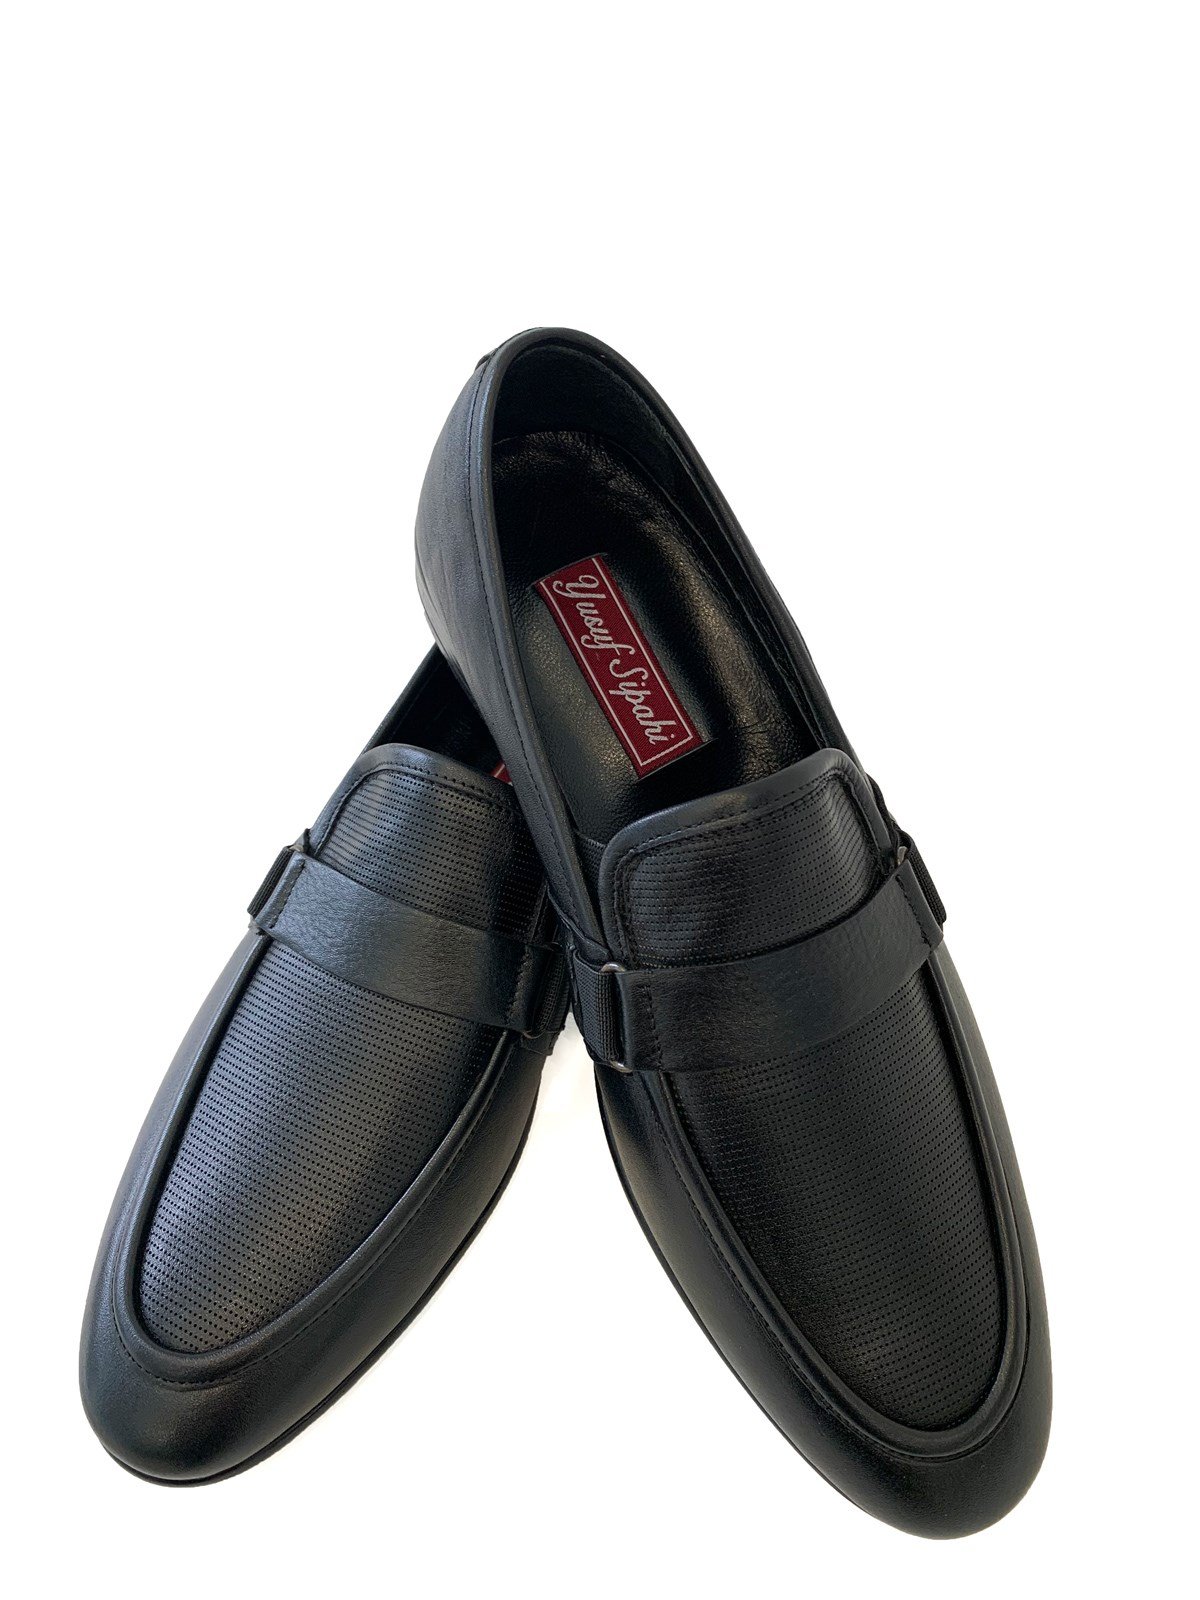 Siyah Hakiki Deri Bağcıksız Orta Topuk Klasik Erkek Ayakkabı | Erkek  Ayakkabı | modaferraro.com.tr